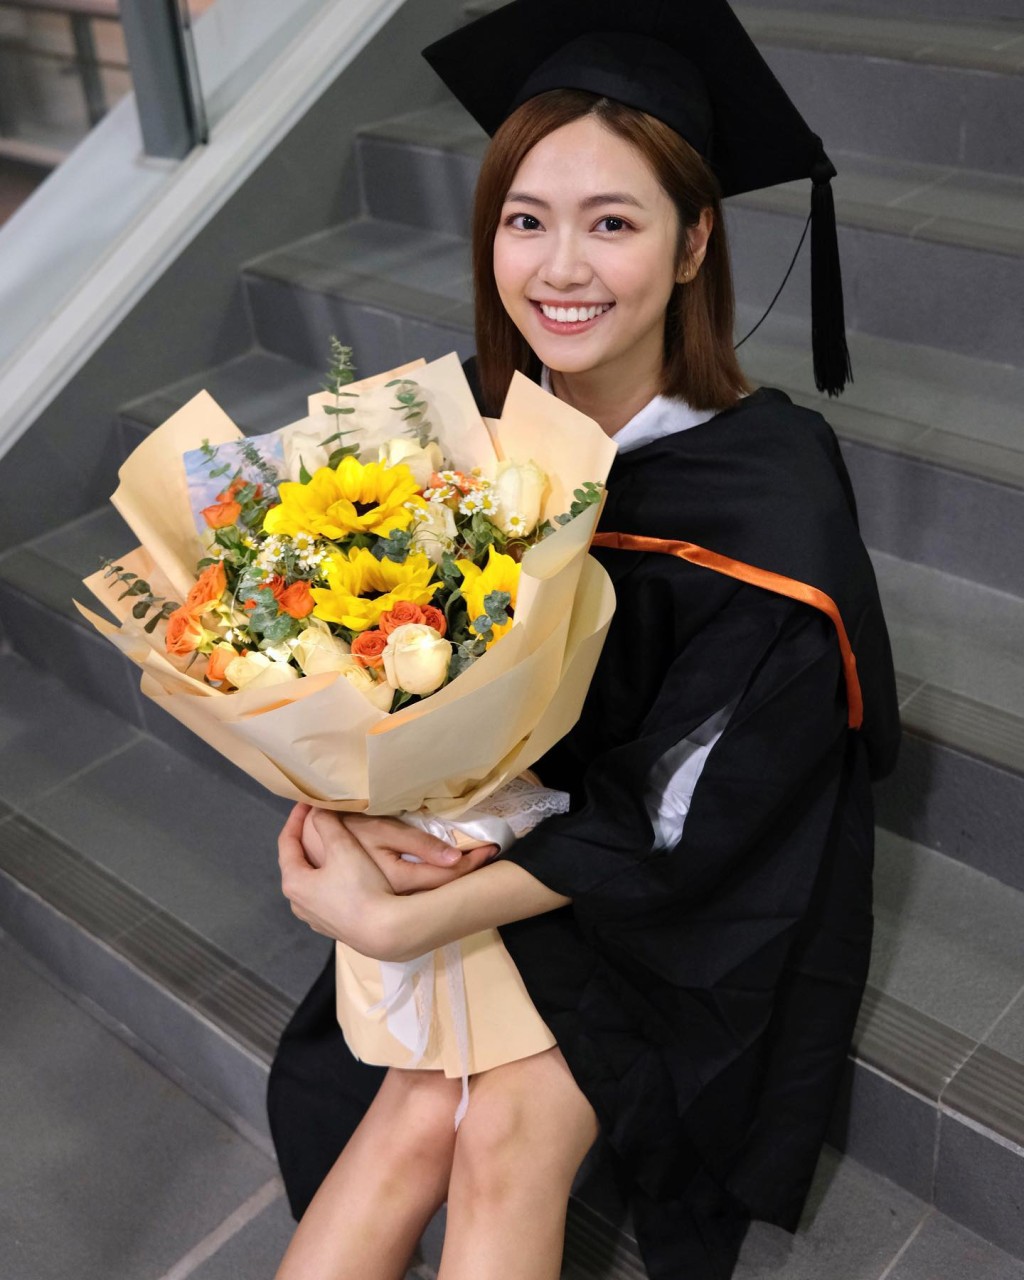 游嘉欣入读香港城市大学管理学系学士课程。